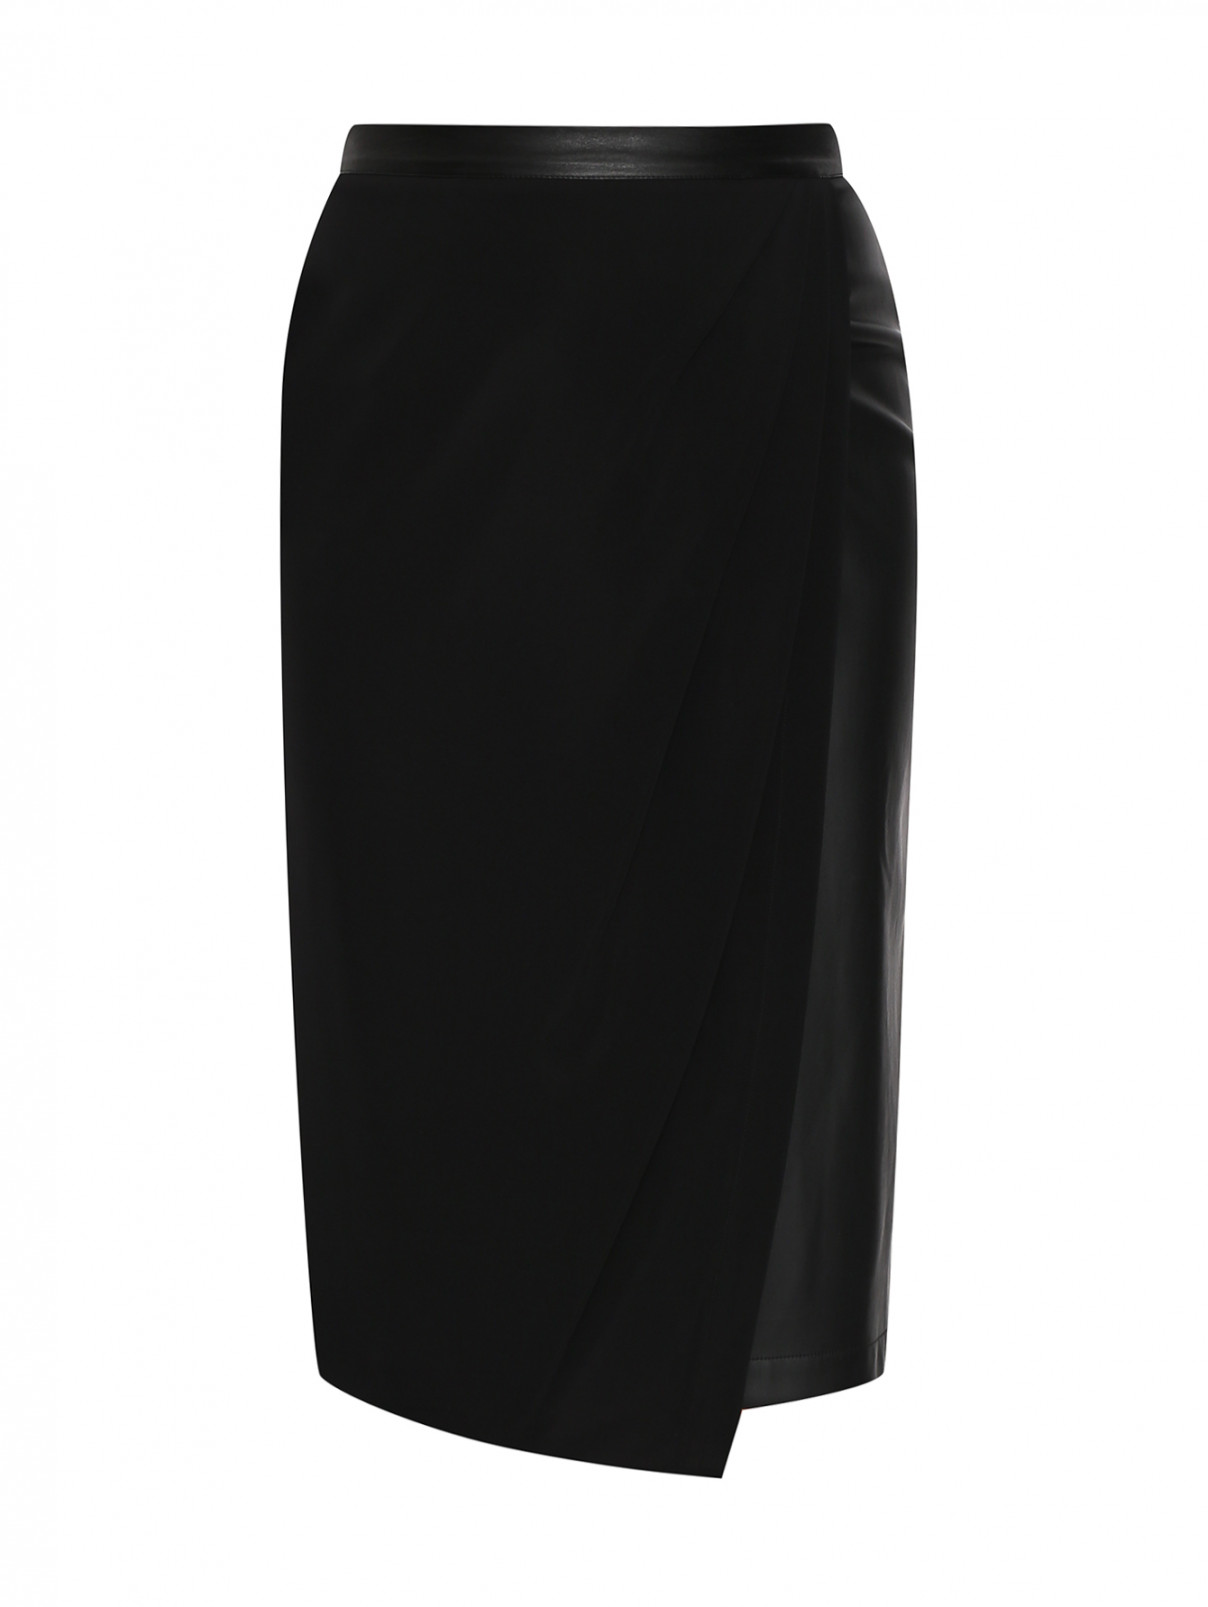 Юбка из эко-кожи с драпировкой Marina Rinaldi  –  Общий вид  – Цвет:  Черный